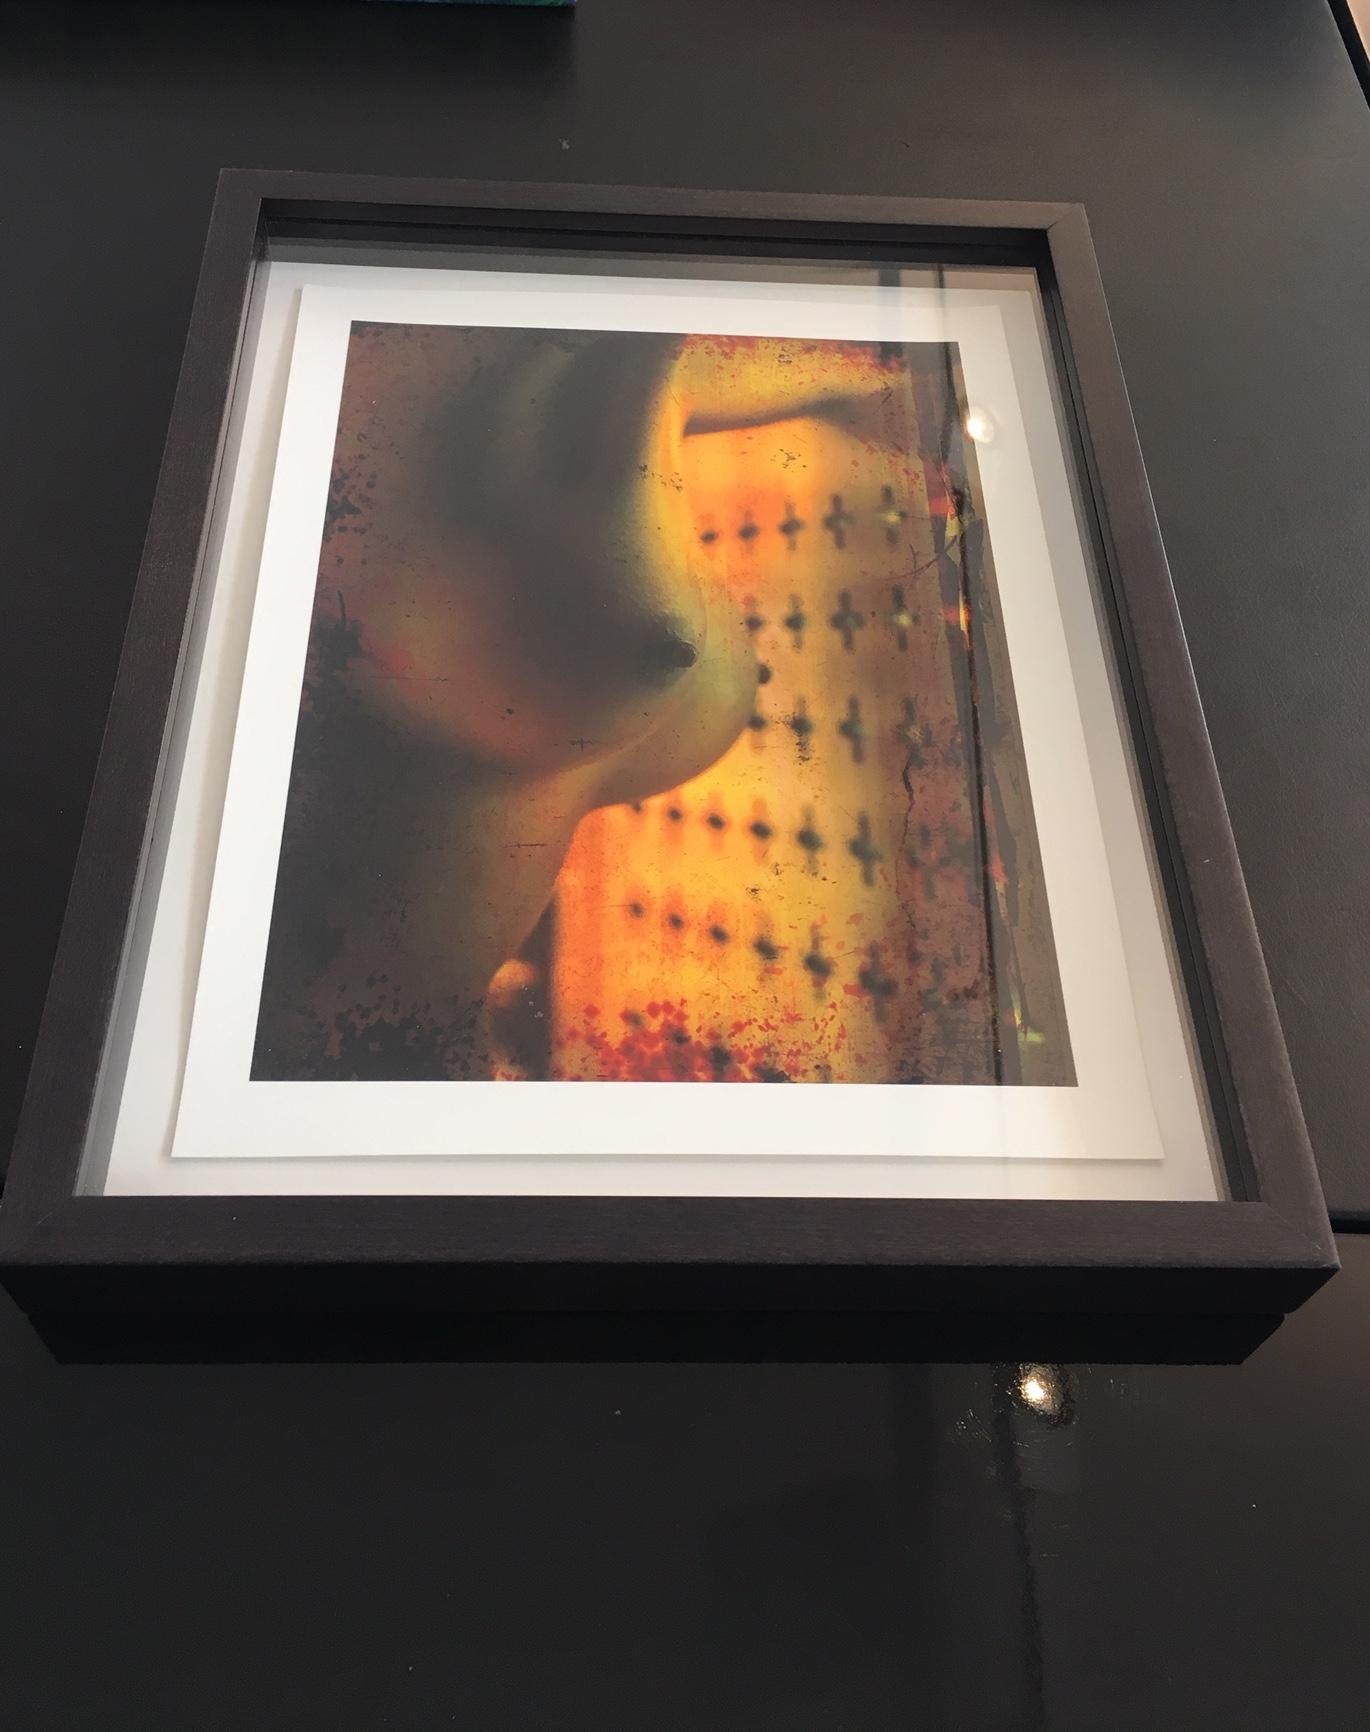 Erotisches Akt 2010 – Bild einer Brust vor einem gelben / orangefarbenen Hintergrund – Photograph von Andreas H. Bitesnich